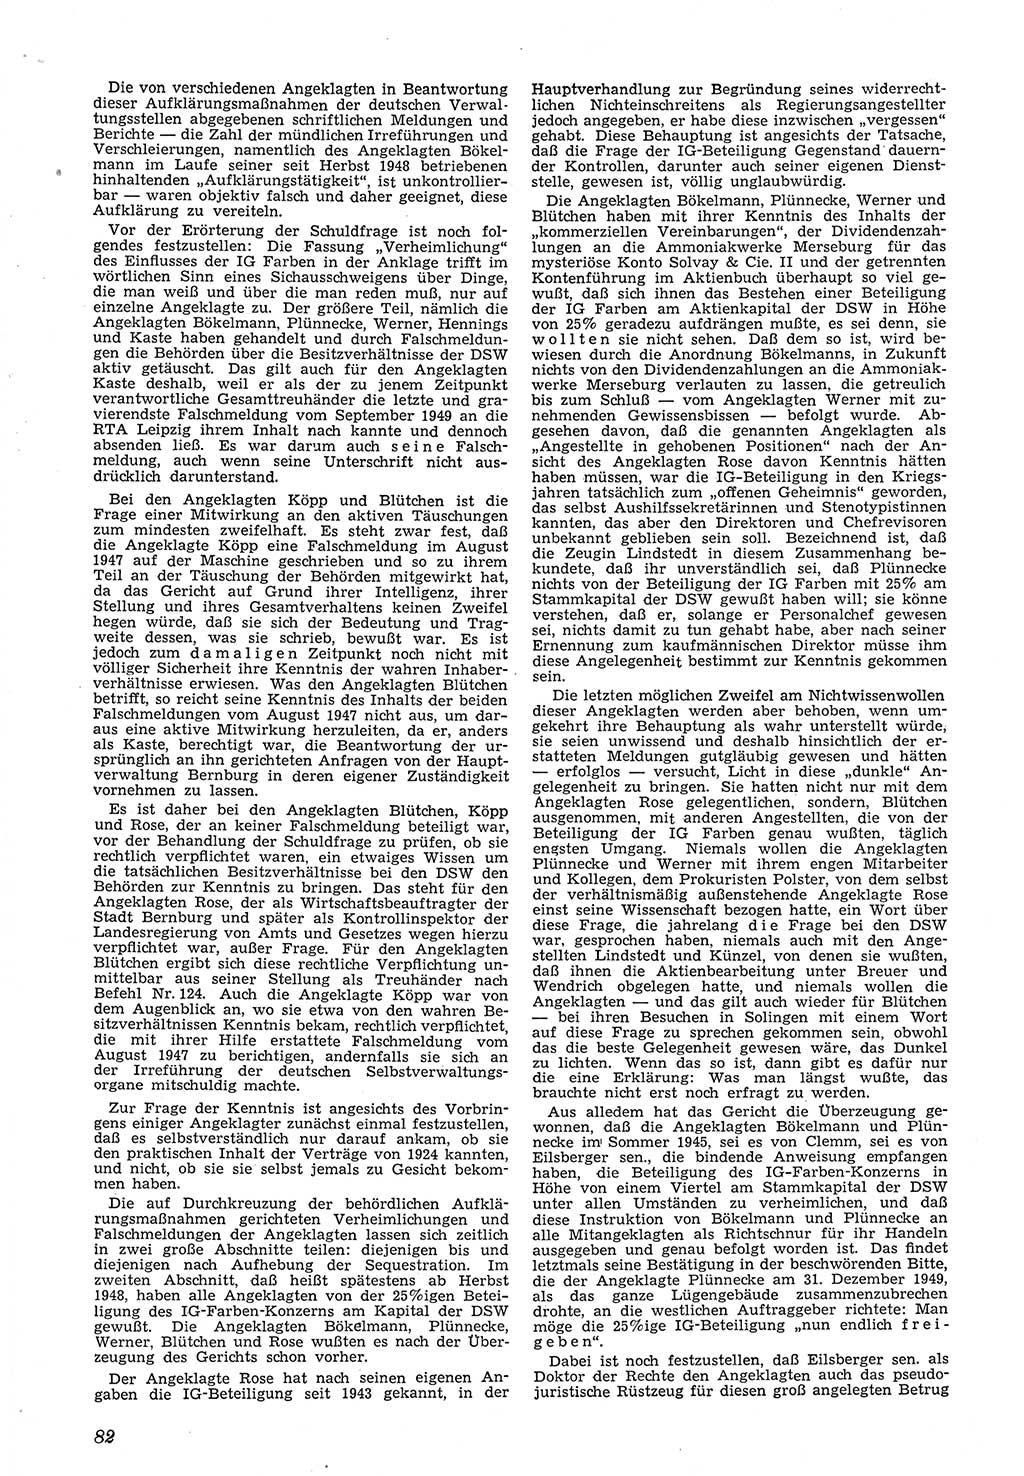 Neue Justiz (NJ), Zeitschrift für Recht und Rechtswissenschaft [Deutsche Demokratische Republik (DDR)], 5. Jahrgang 1951, Seite 82 (NJ DDR 1951, S. 82)